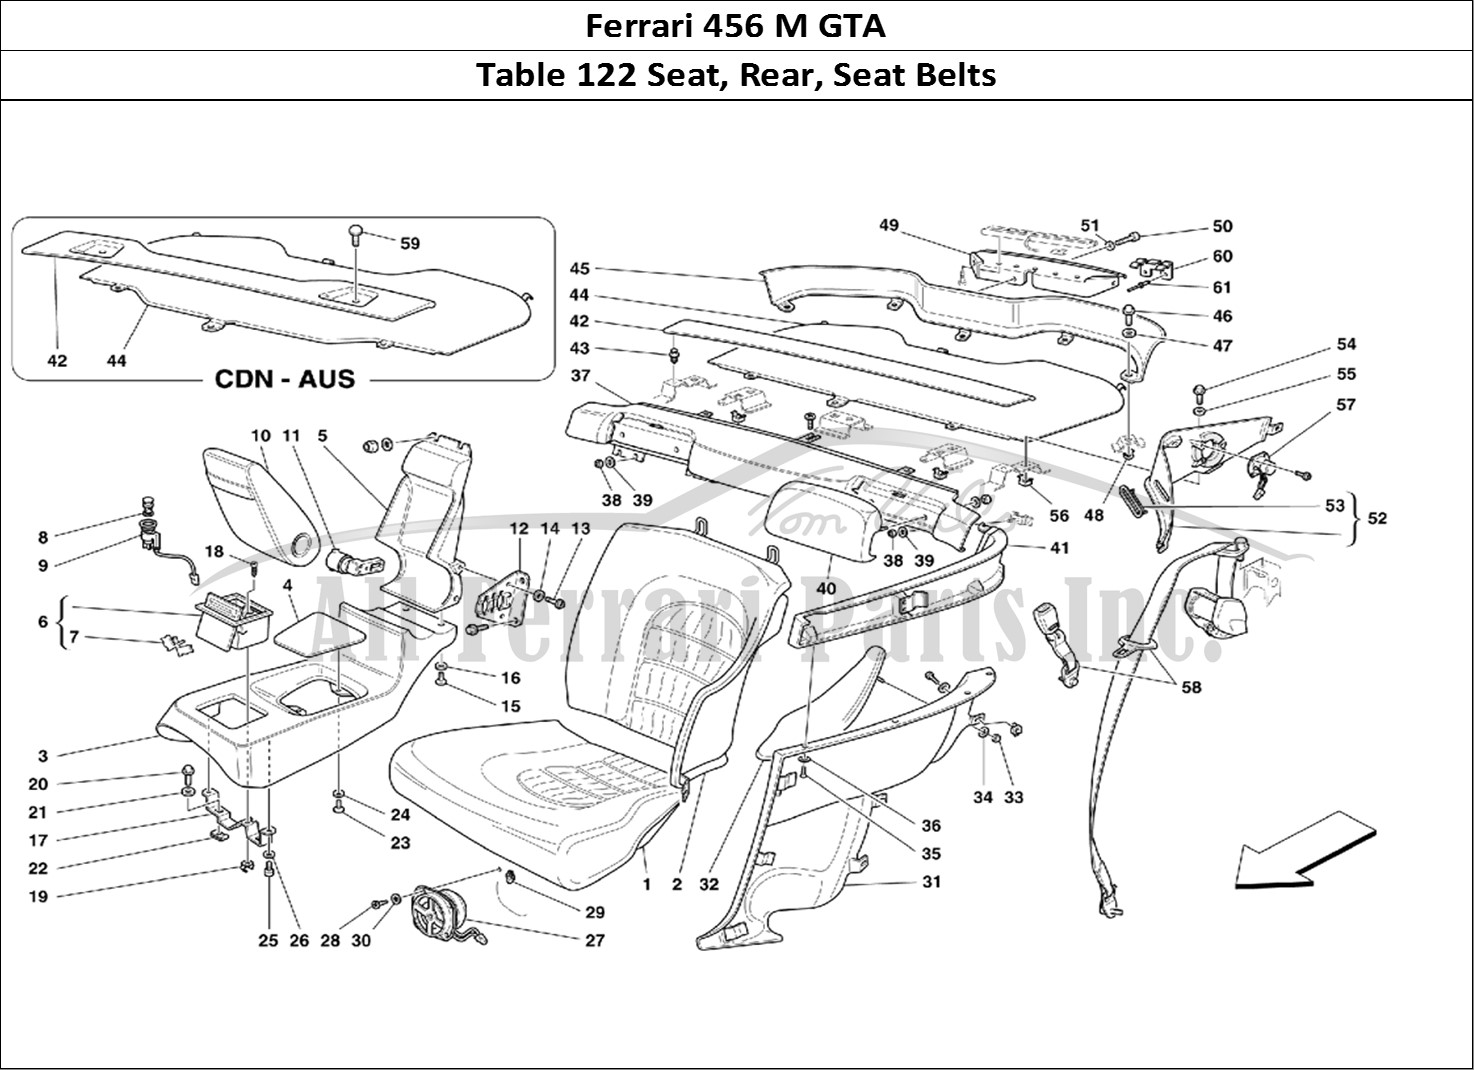 Ferrari Parts Ferrari 456 M GT Page 122 Rear Seats and Belts